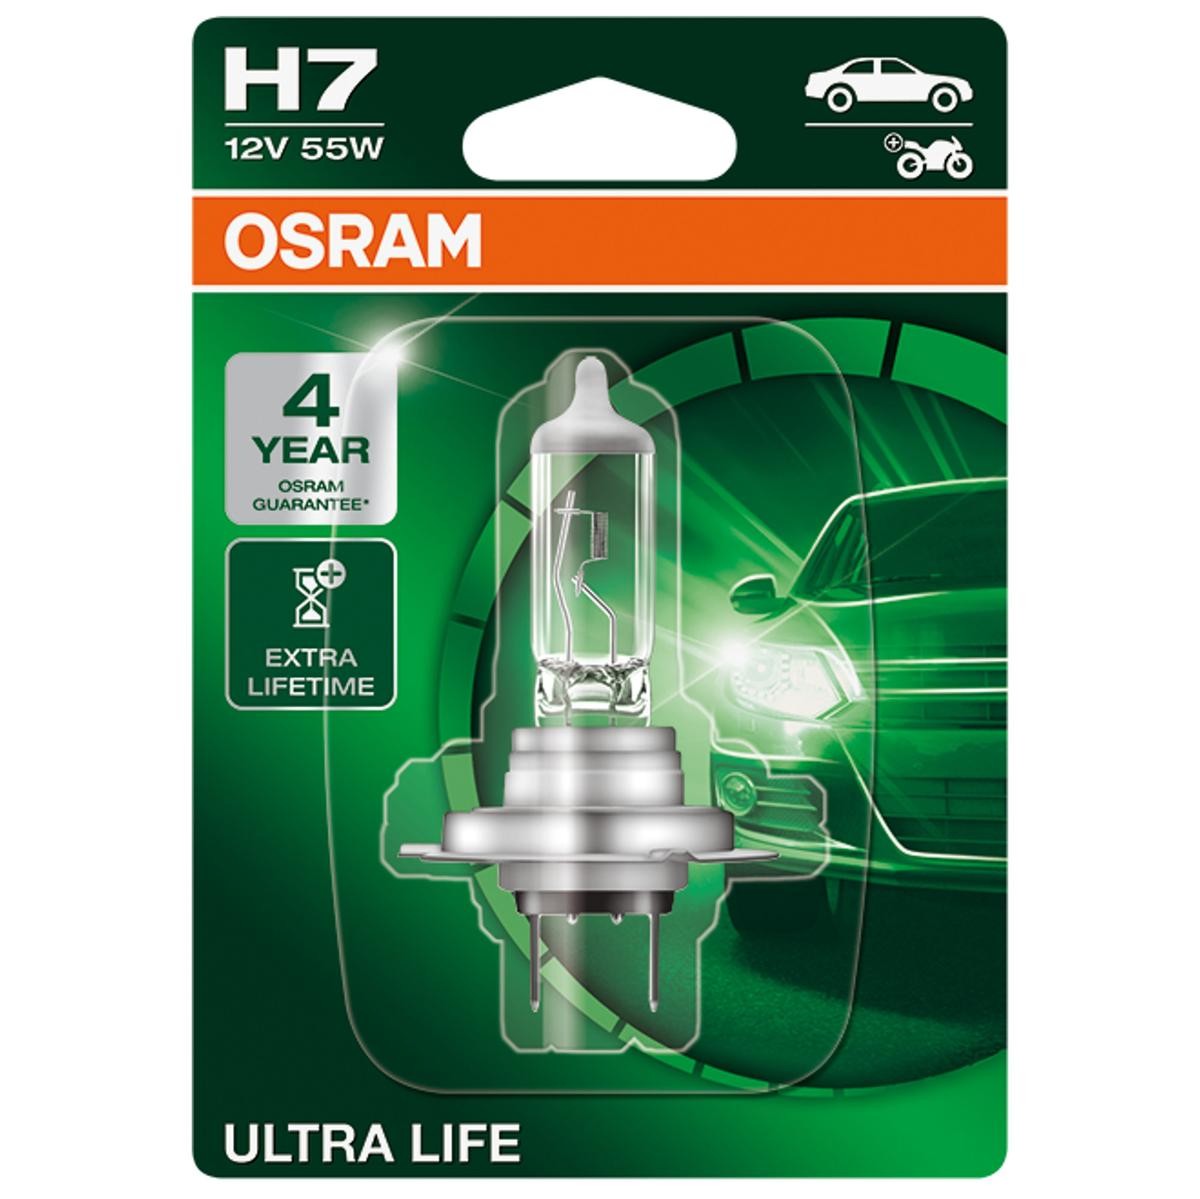 H7 OSRAM 64210ULT-01B VW Amarok 2H 2019 Xenon lampor H7 12V 55W 3200K Halogen